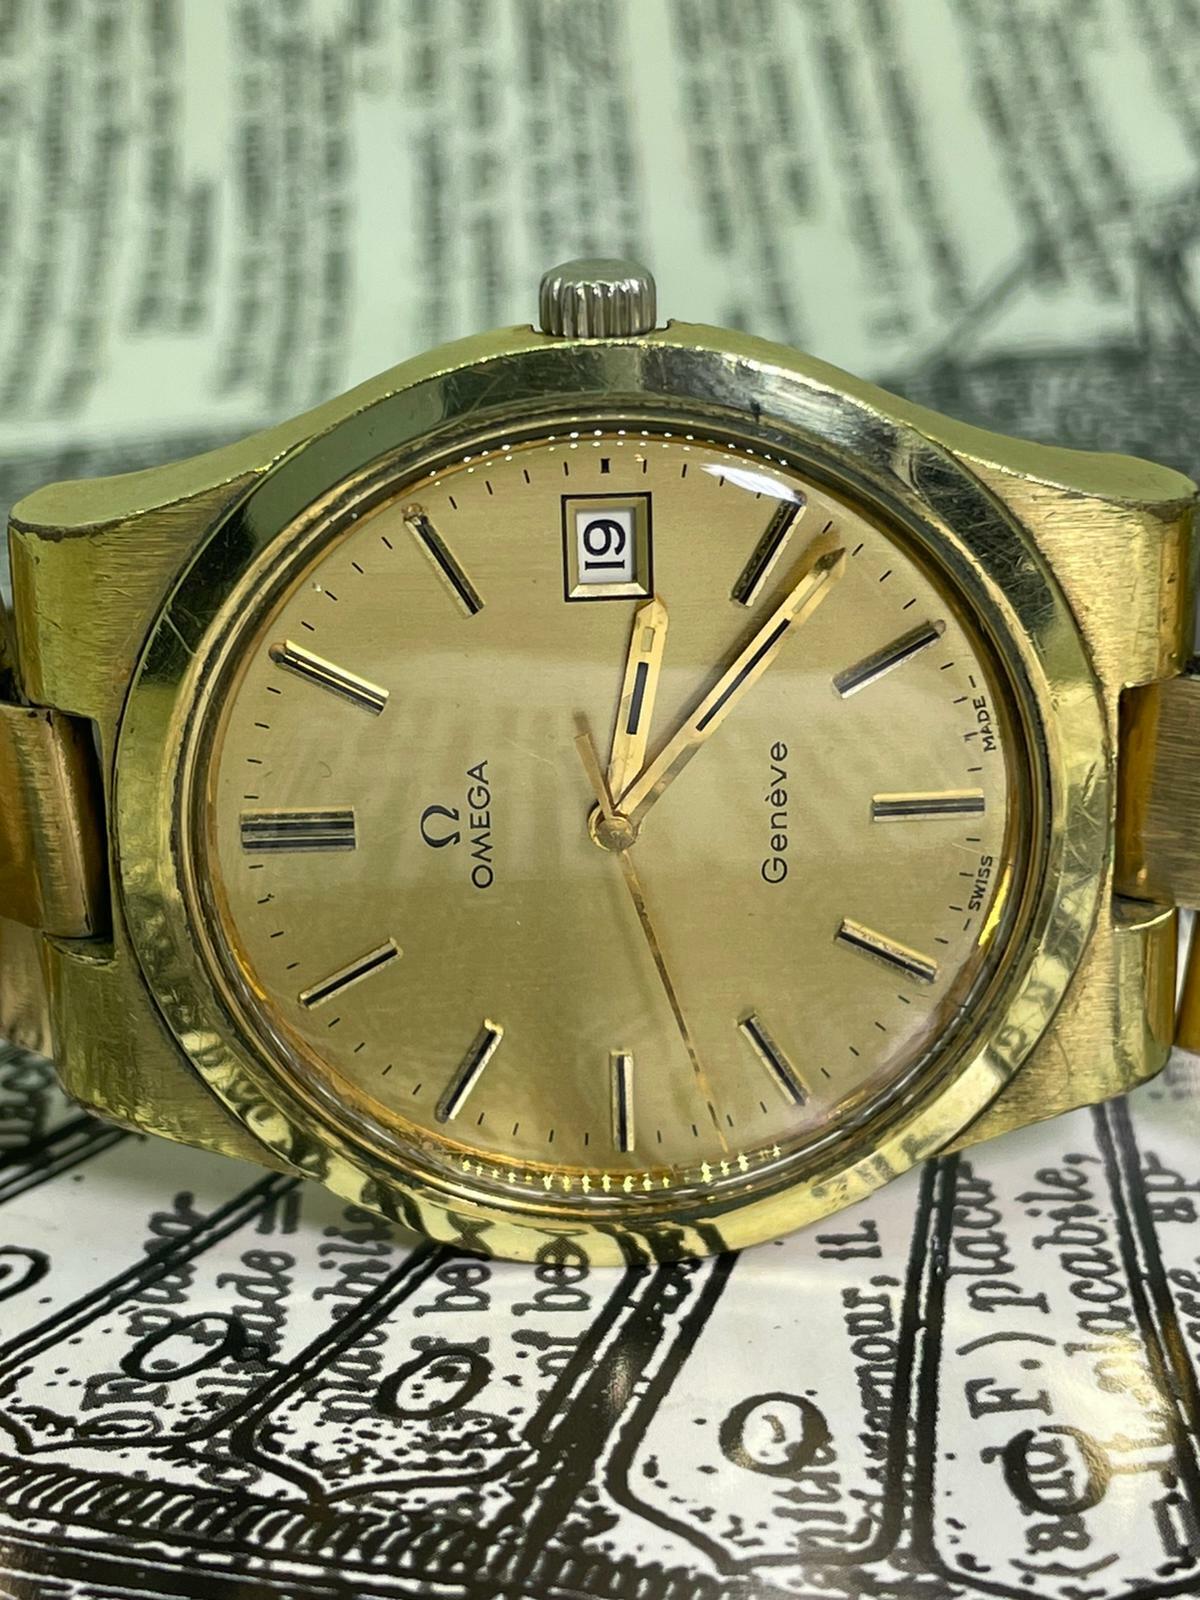 Diese raffinierte Vintage Omega Geneve stammt aus dem Jahr 1974,
trotz ihres Alters ist diese zeitlose & stilvolle Armbanduhr in gutem Zustand & in ausgezeichneter Funktionstüchtigkeit

Es ist mit einem manuellen (Handaufzug) Kaliber 1030 mit 17